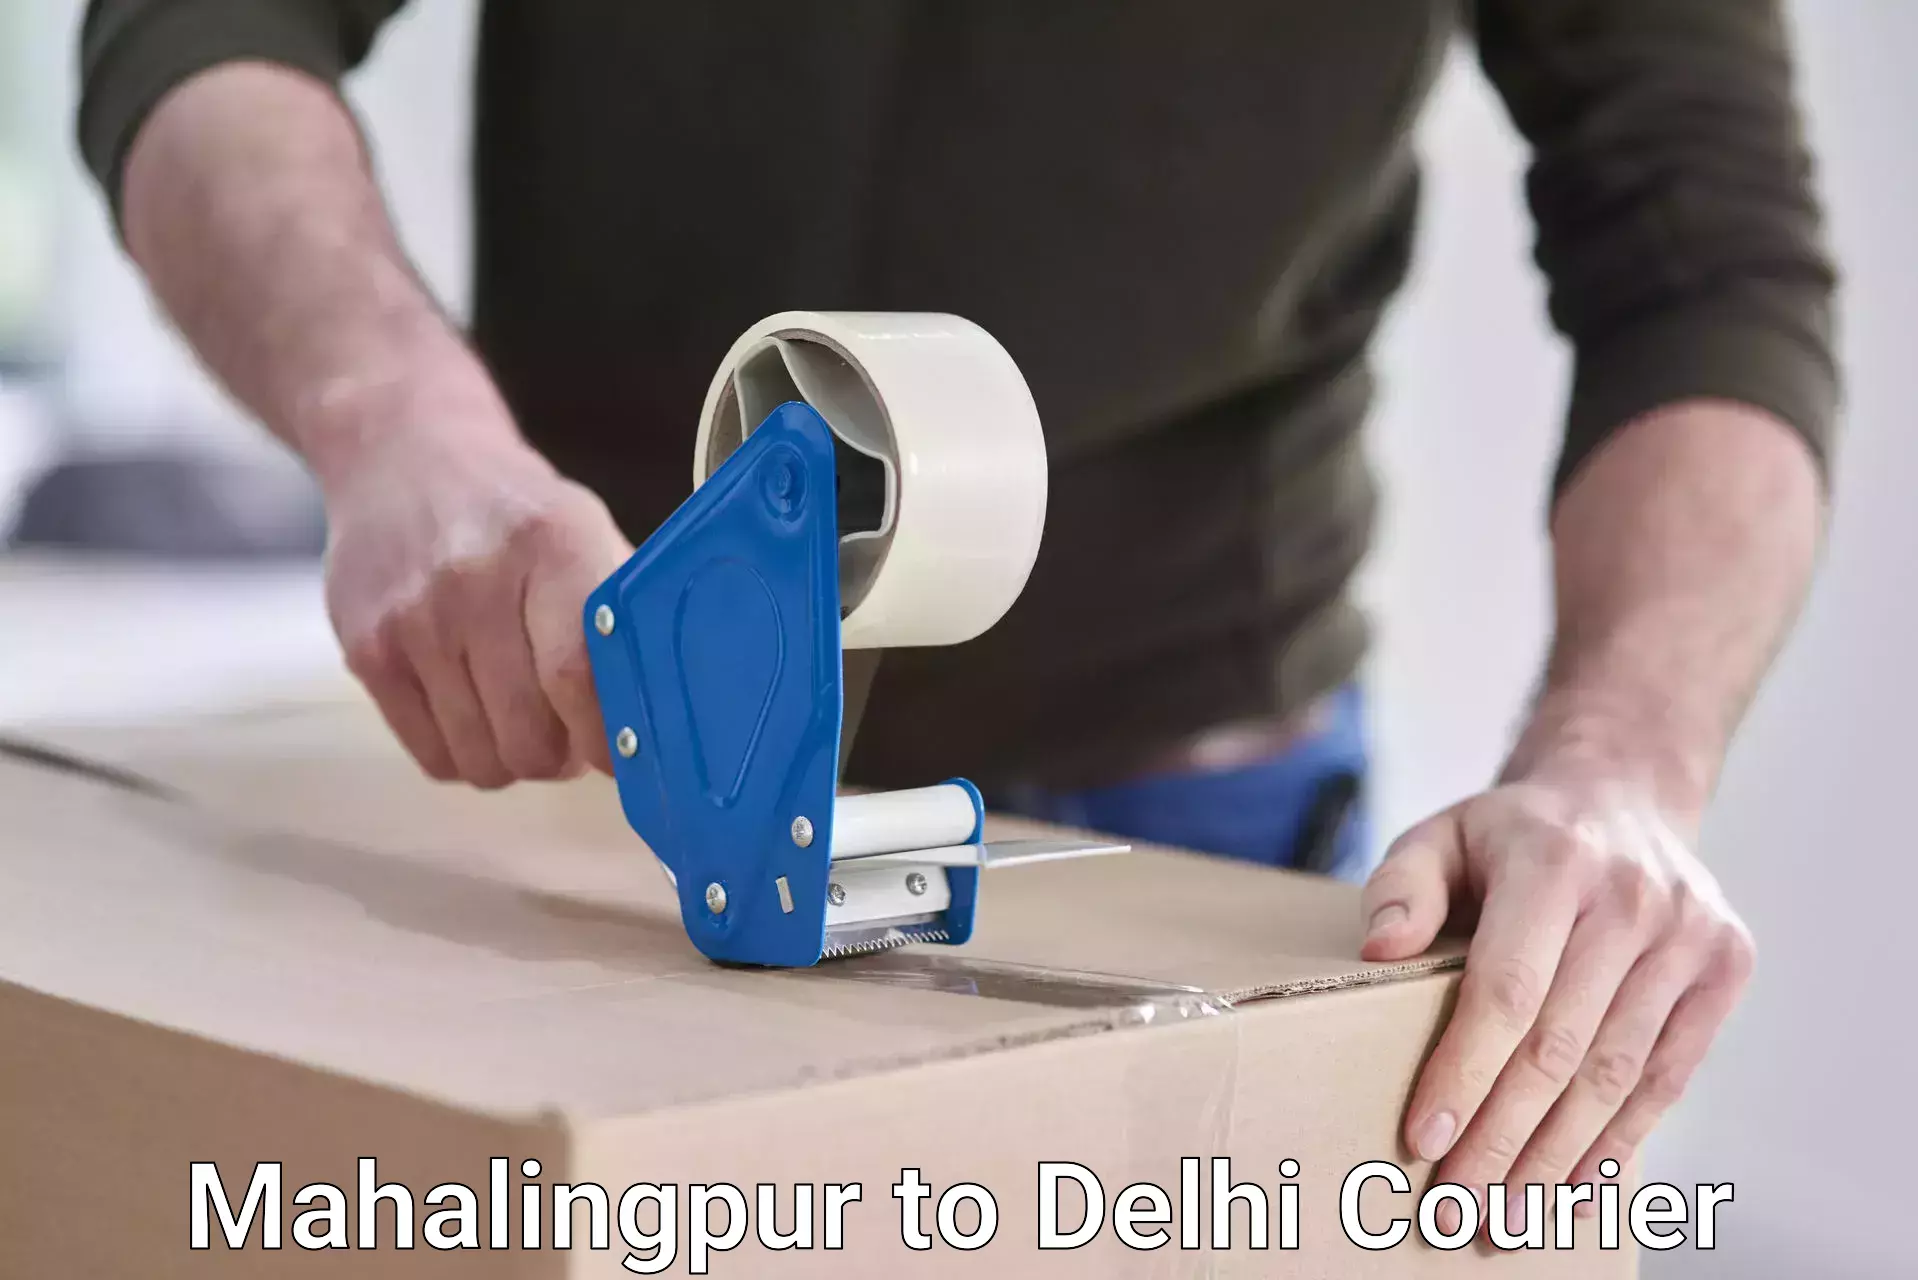 Next-day delivery options Mahalingpur to Jamia Millia Islamia New Delhi